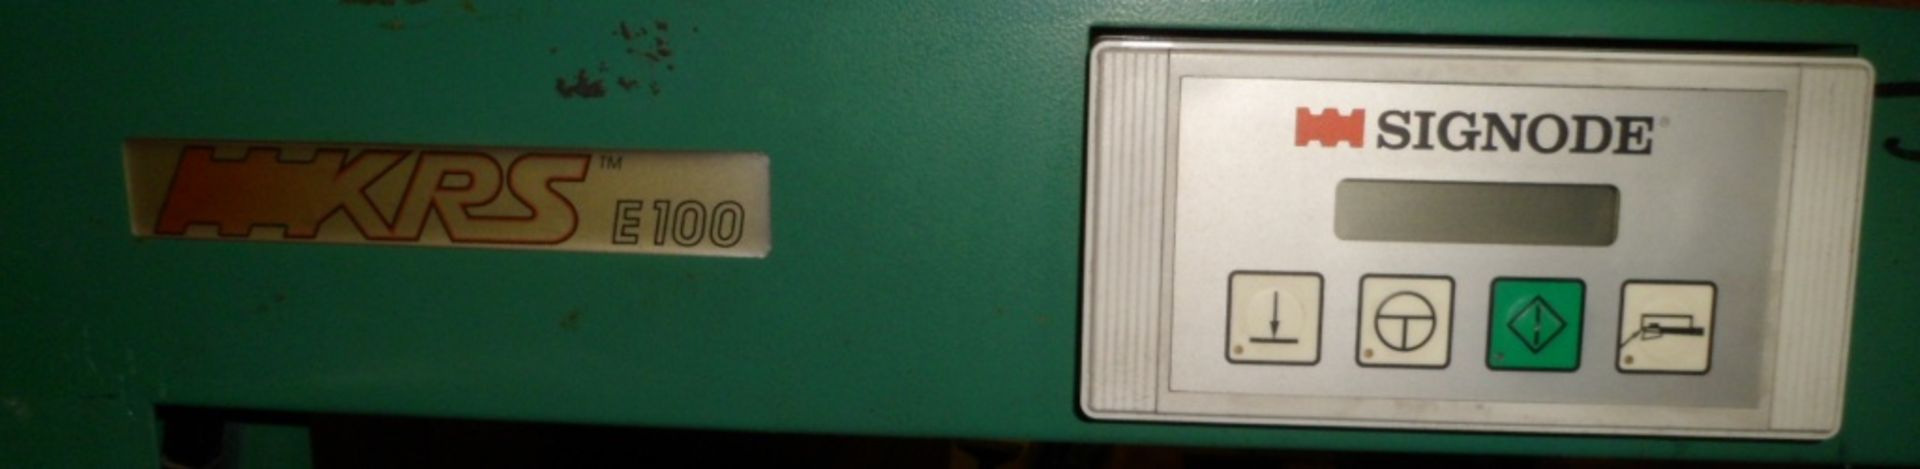 Signol semi automatic box stapping machine model KRS E-100 - Image 3 of 3